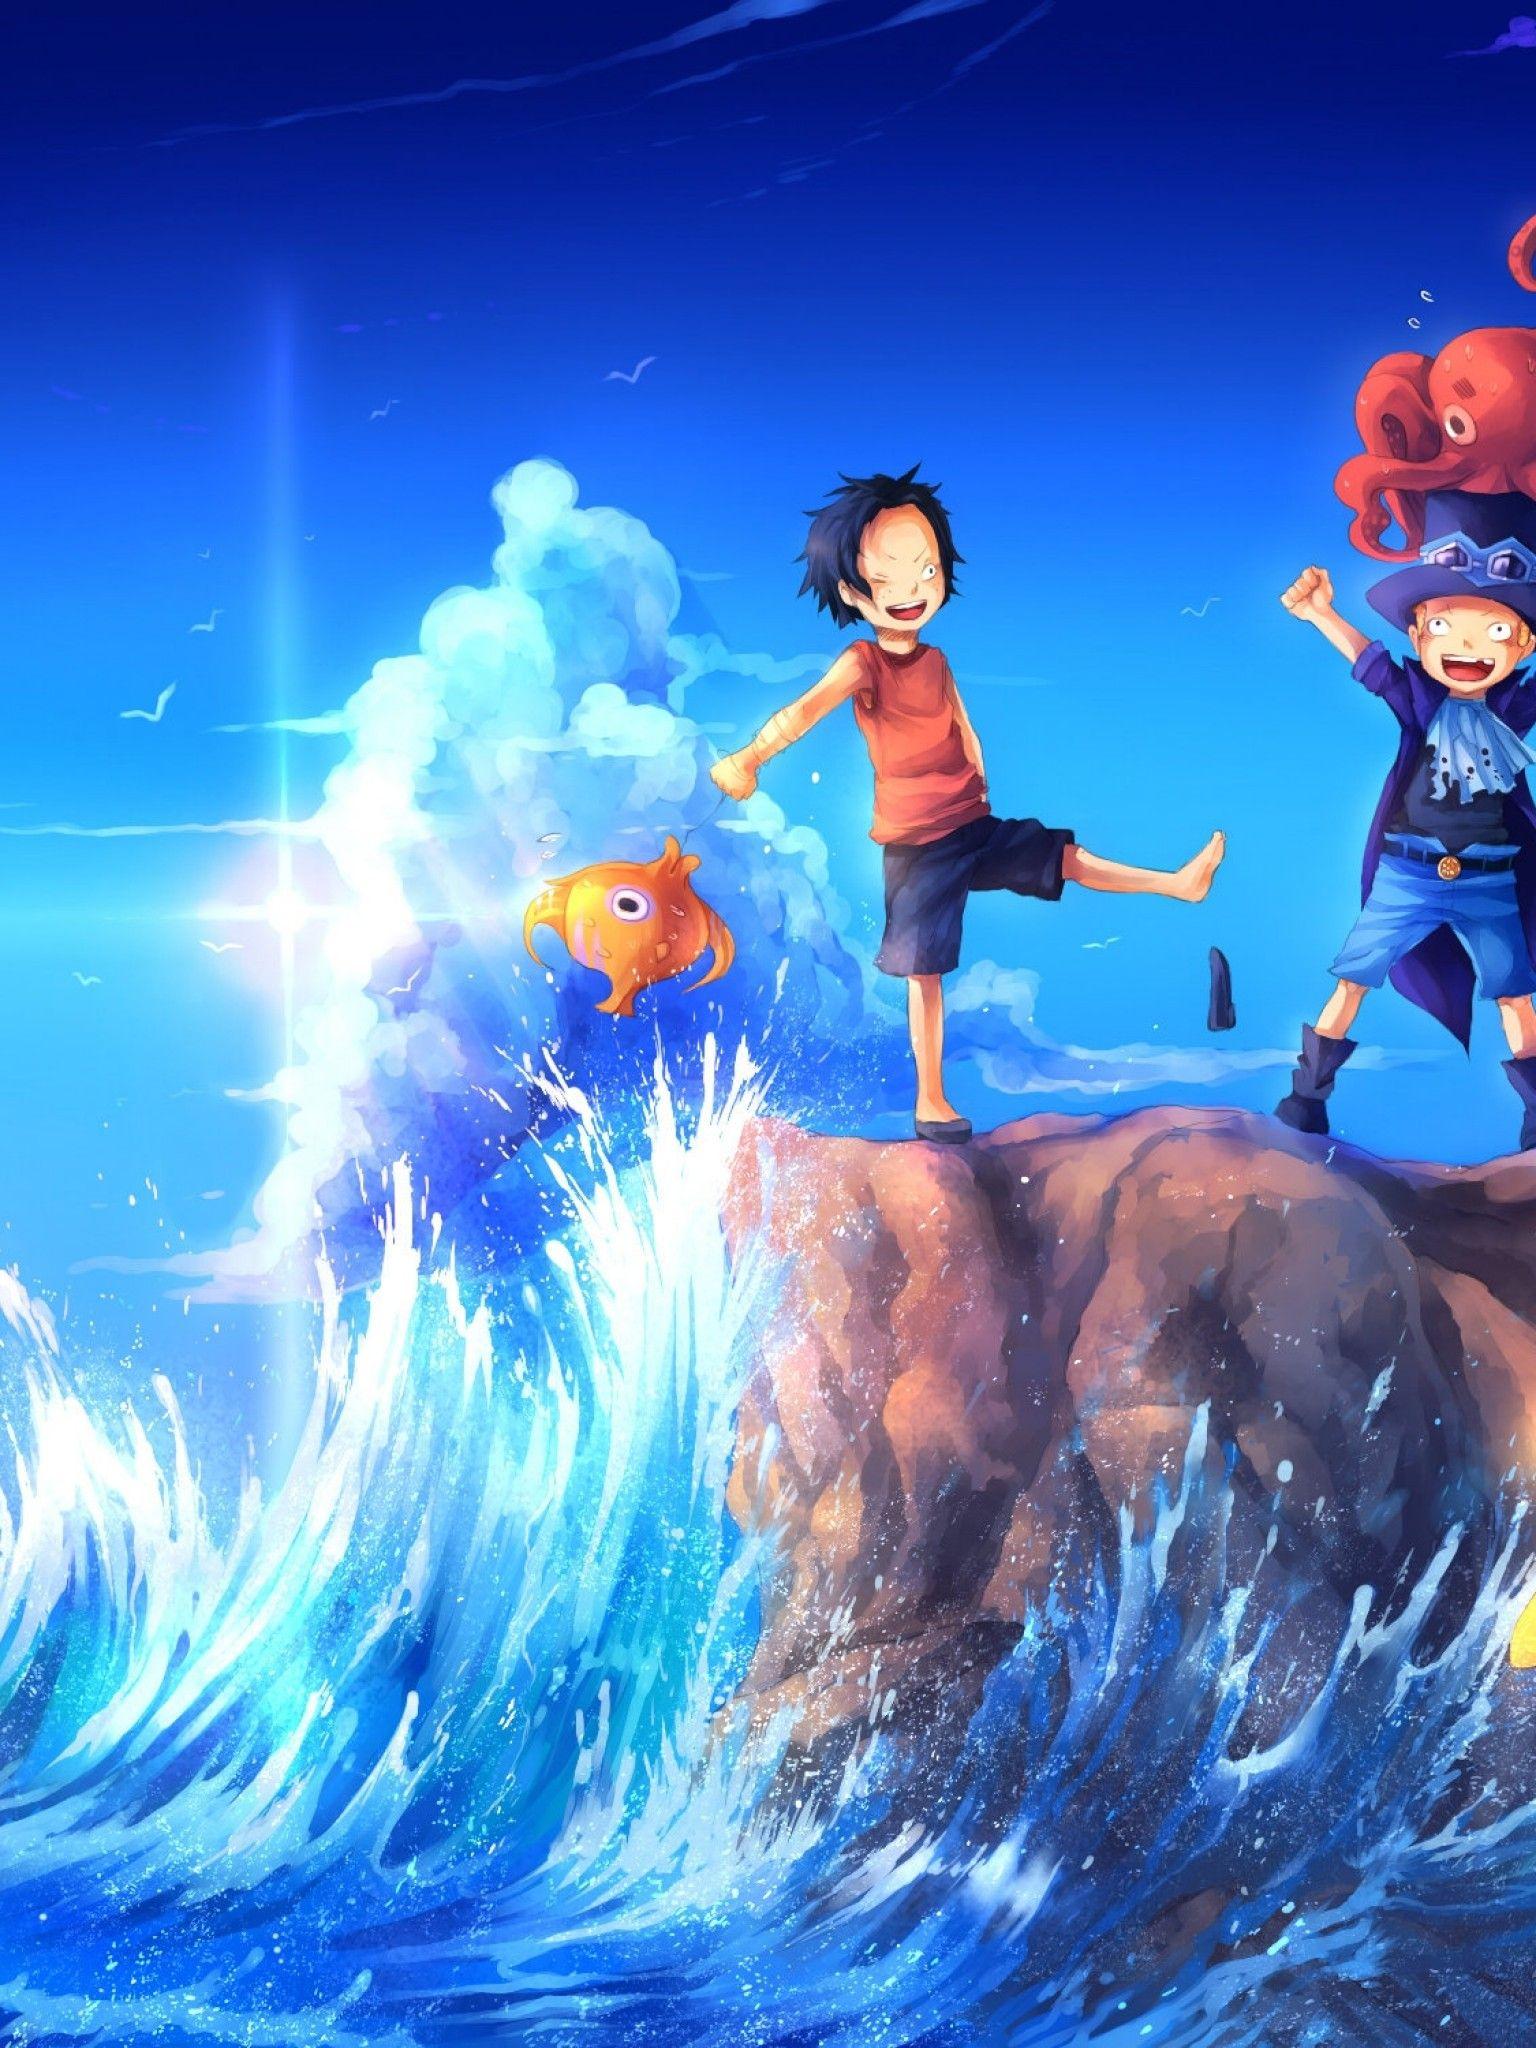 Cùng trải nghiệm One Piece trên màn hình to và sắc nét hơn bao giờ hết với những bức hình nền iPad One Piece. Hãy nhanh tay tải về và tận hưởng niềm đam mê anime của bạn.